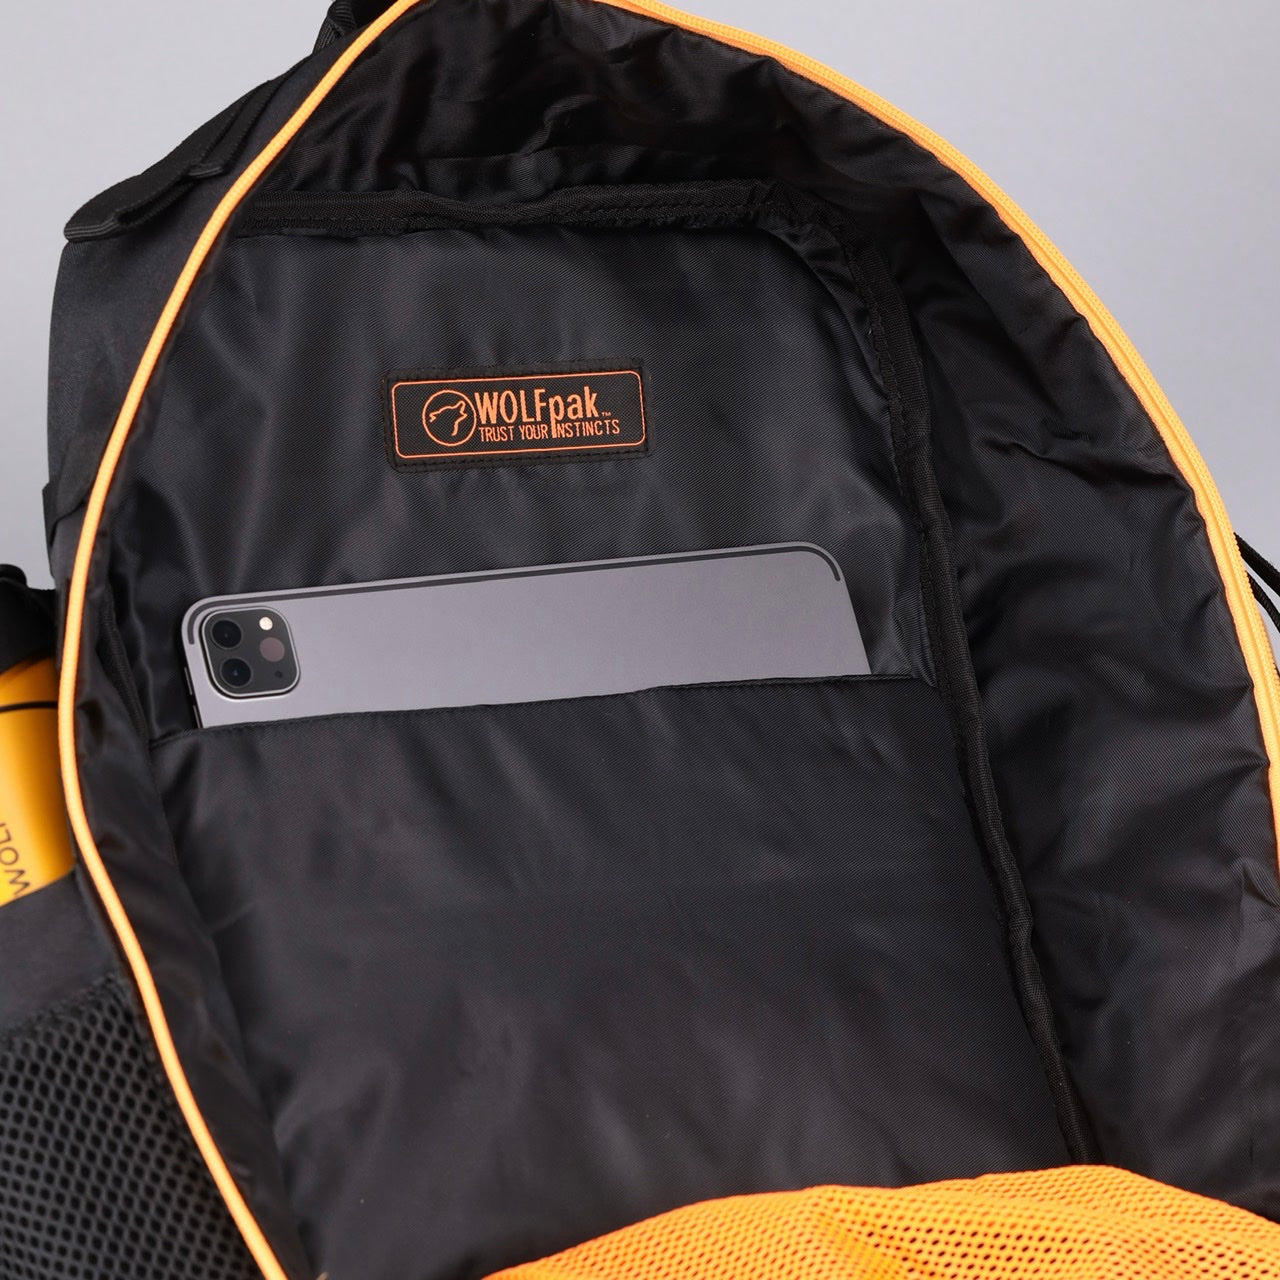 35L Backpack Black Neon Orange